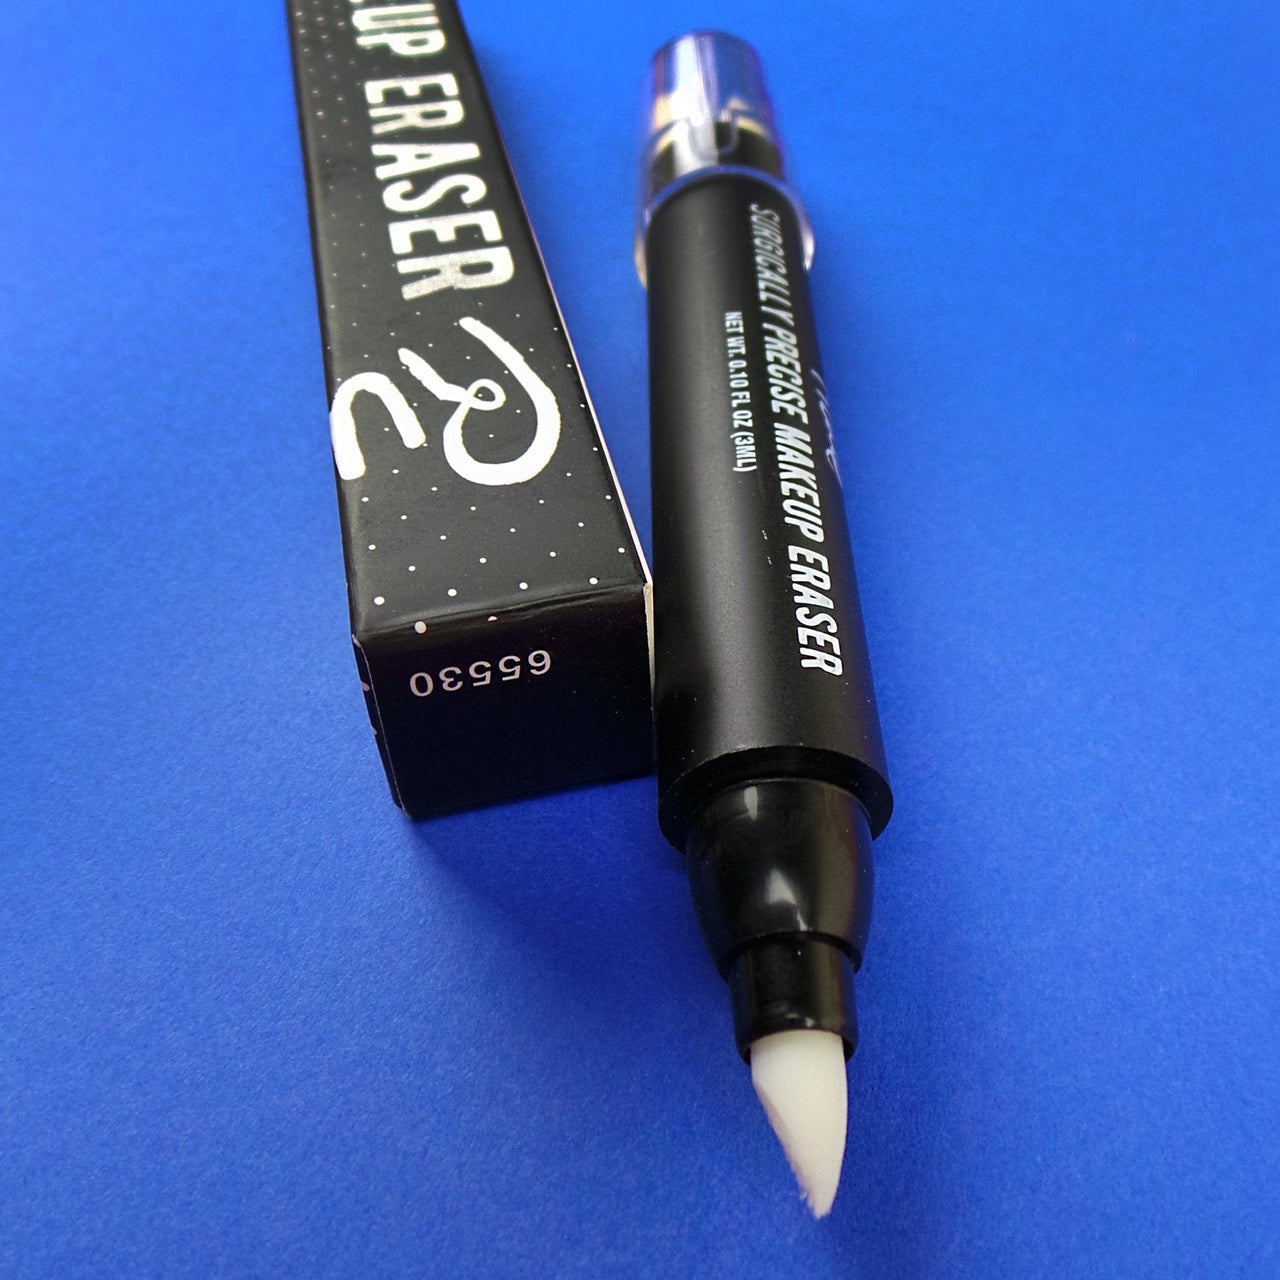 RUDE Surgically Precise Makeup Eraser